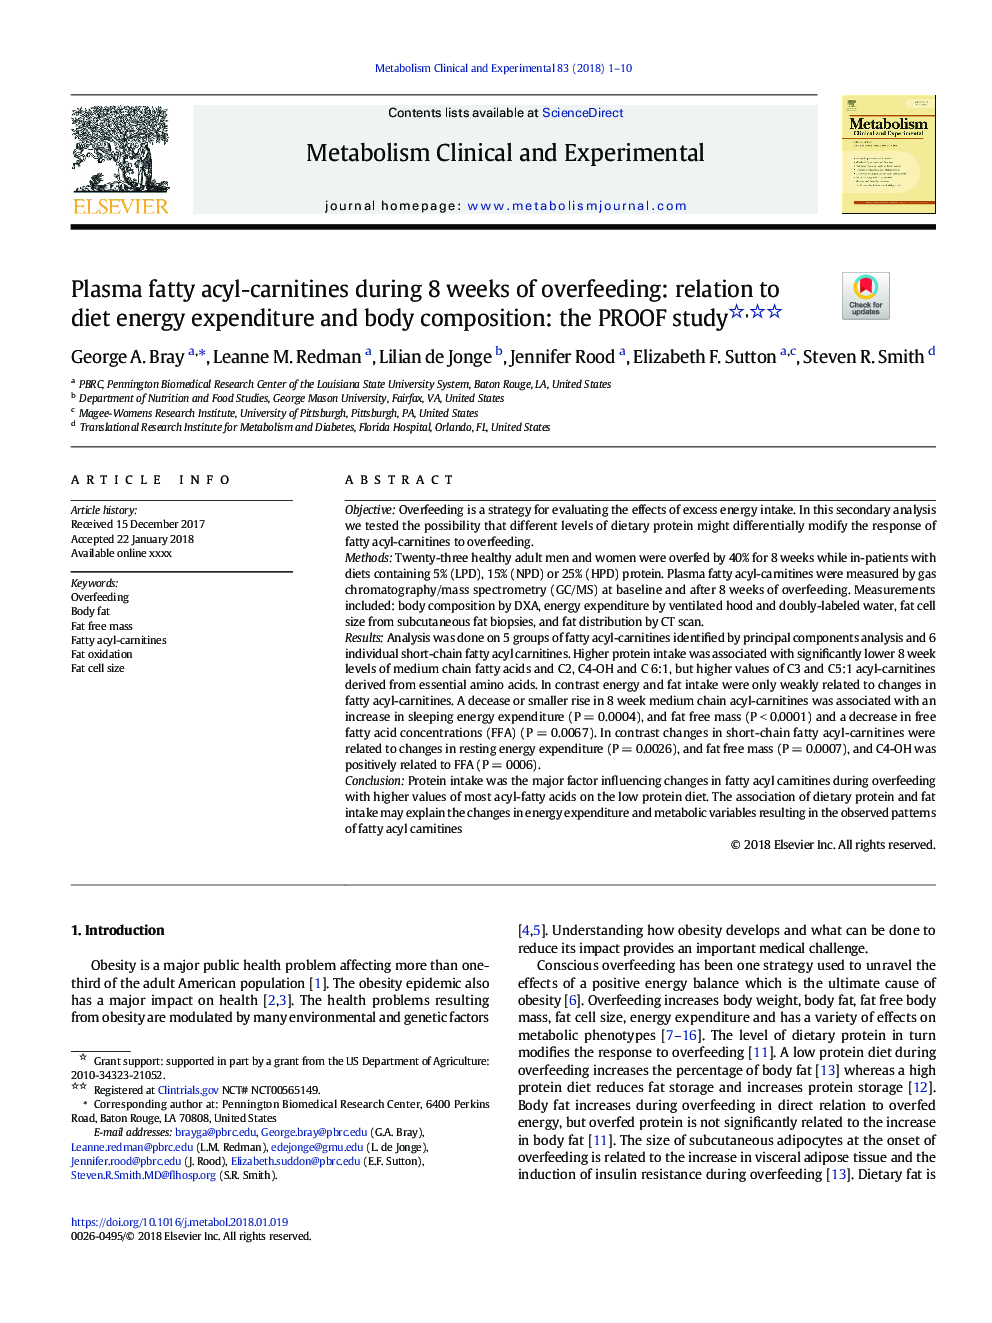 Plasma fatty acyl-carnitines during 8â¯weeks of overfeeding: relation to diet energy expenditure and body composition: the PROOF study